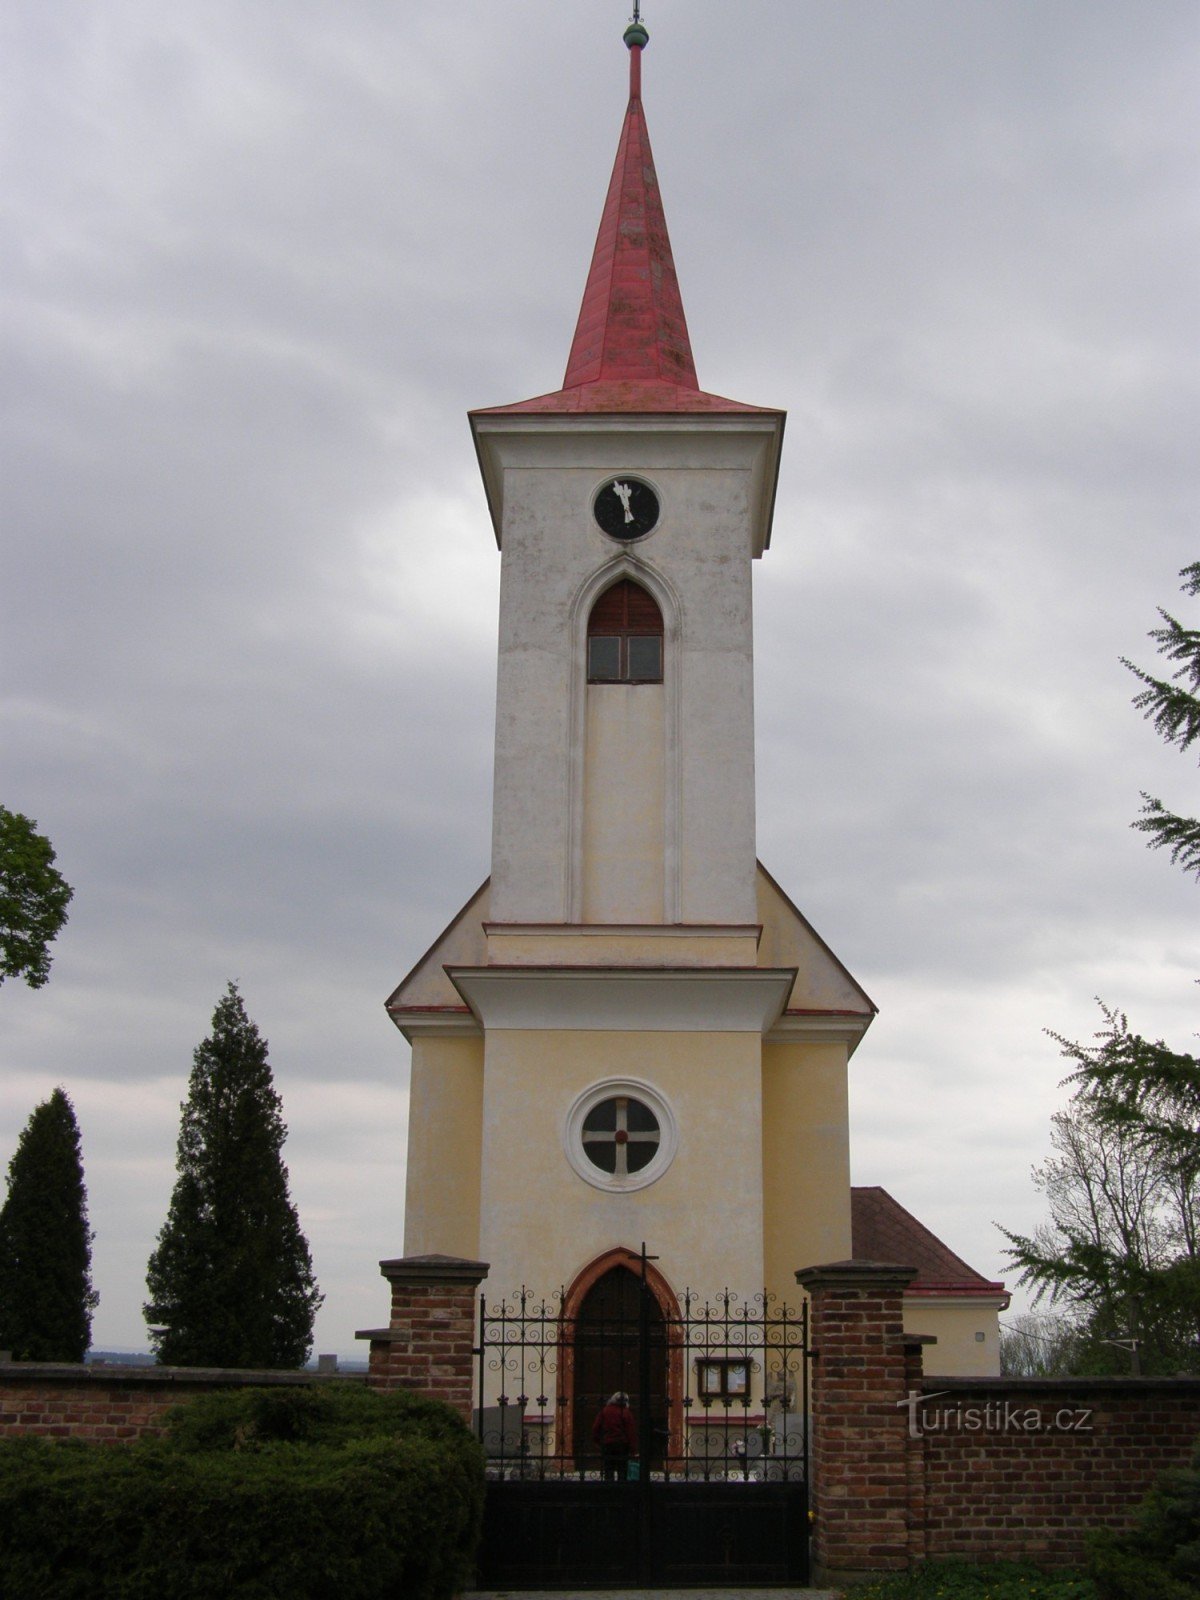 Velichovsky - Igreja da Transfiguração do Senhor